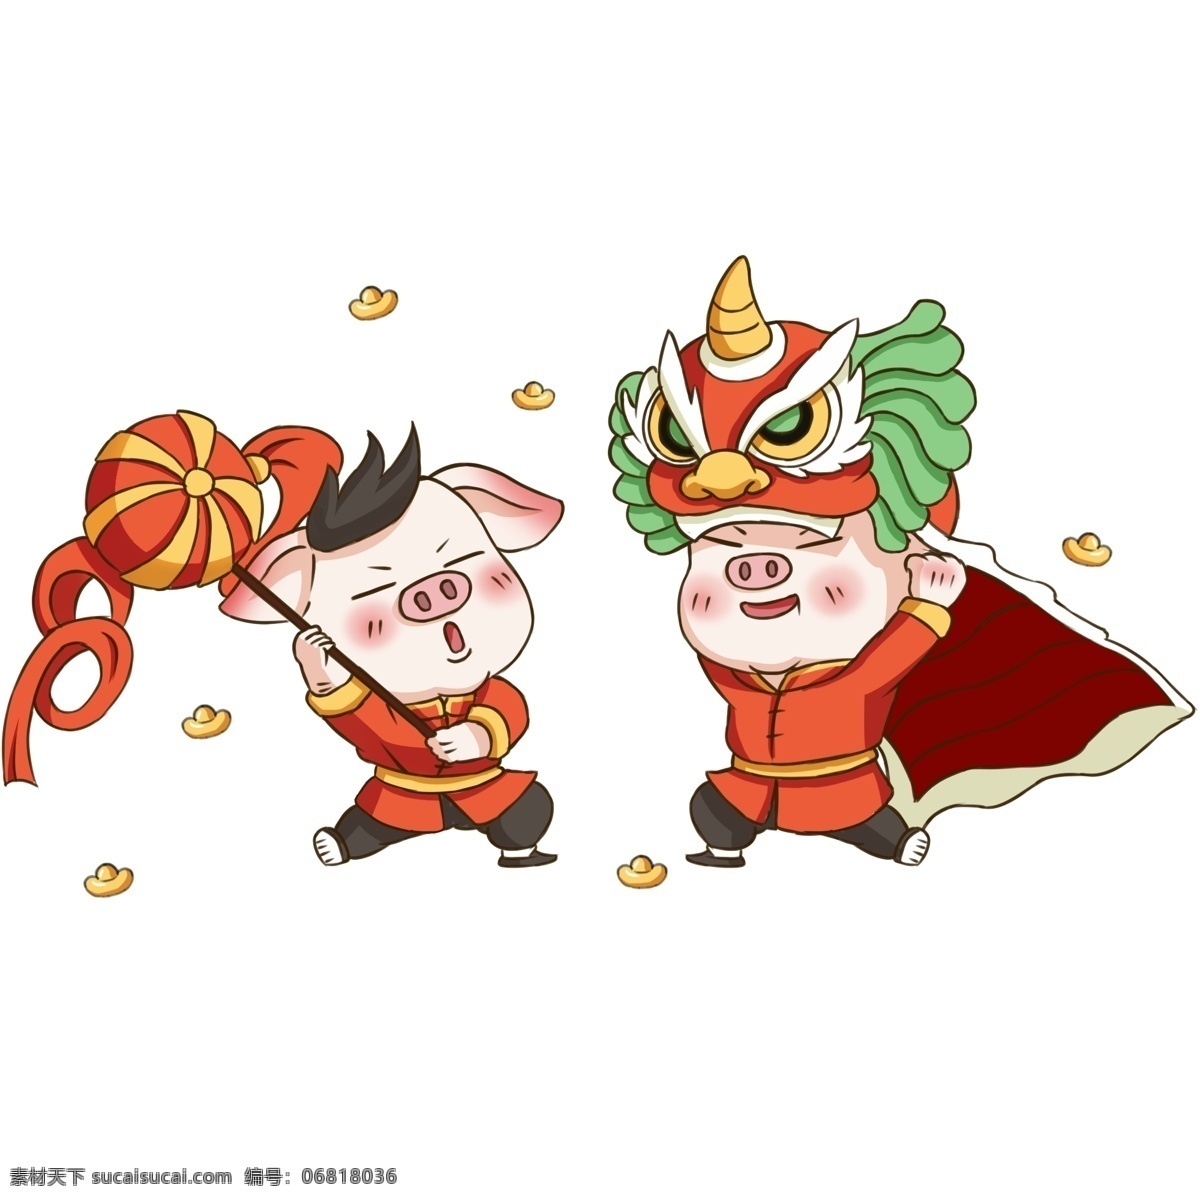 新年 小 猪 透明 底 中国风 春节 舞狮 红色 喜庆 2019新年 传统节日 小猪 猪年 生肖 彩球